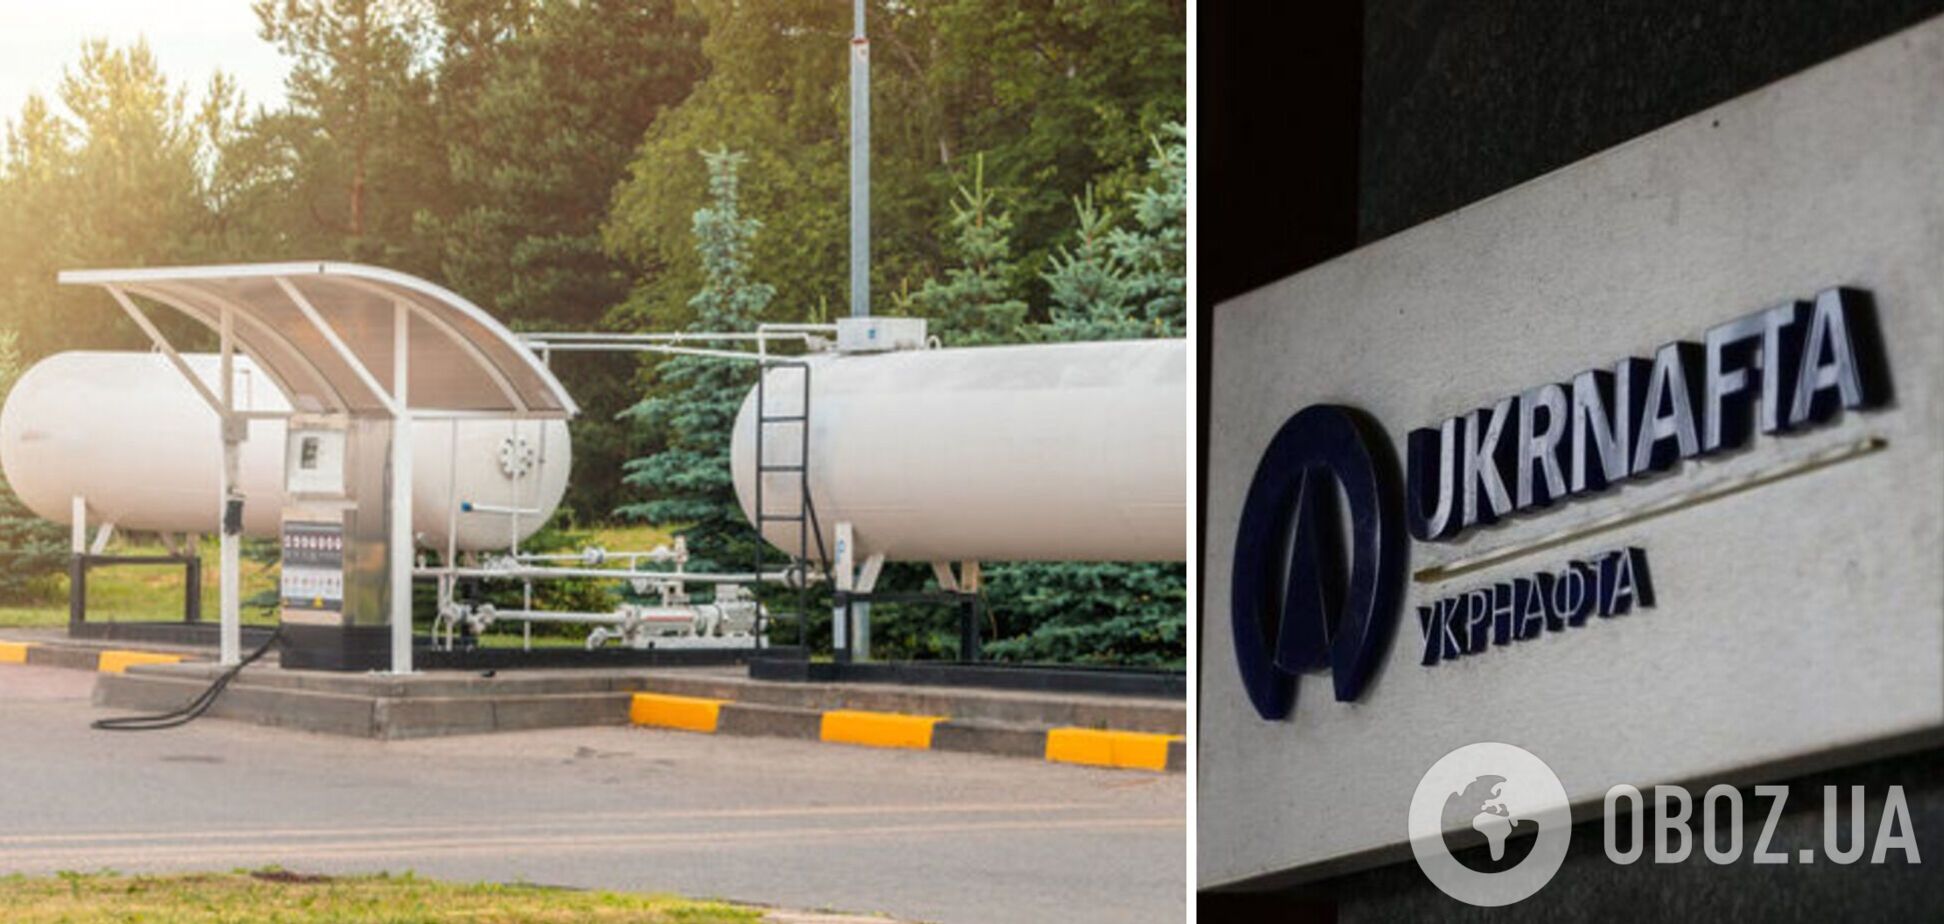 Генпрокуратура розпочала розслідування оборудок 'Укрнафти' зі скрапленим газом